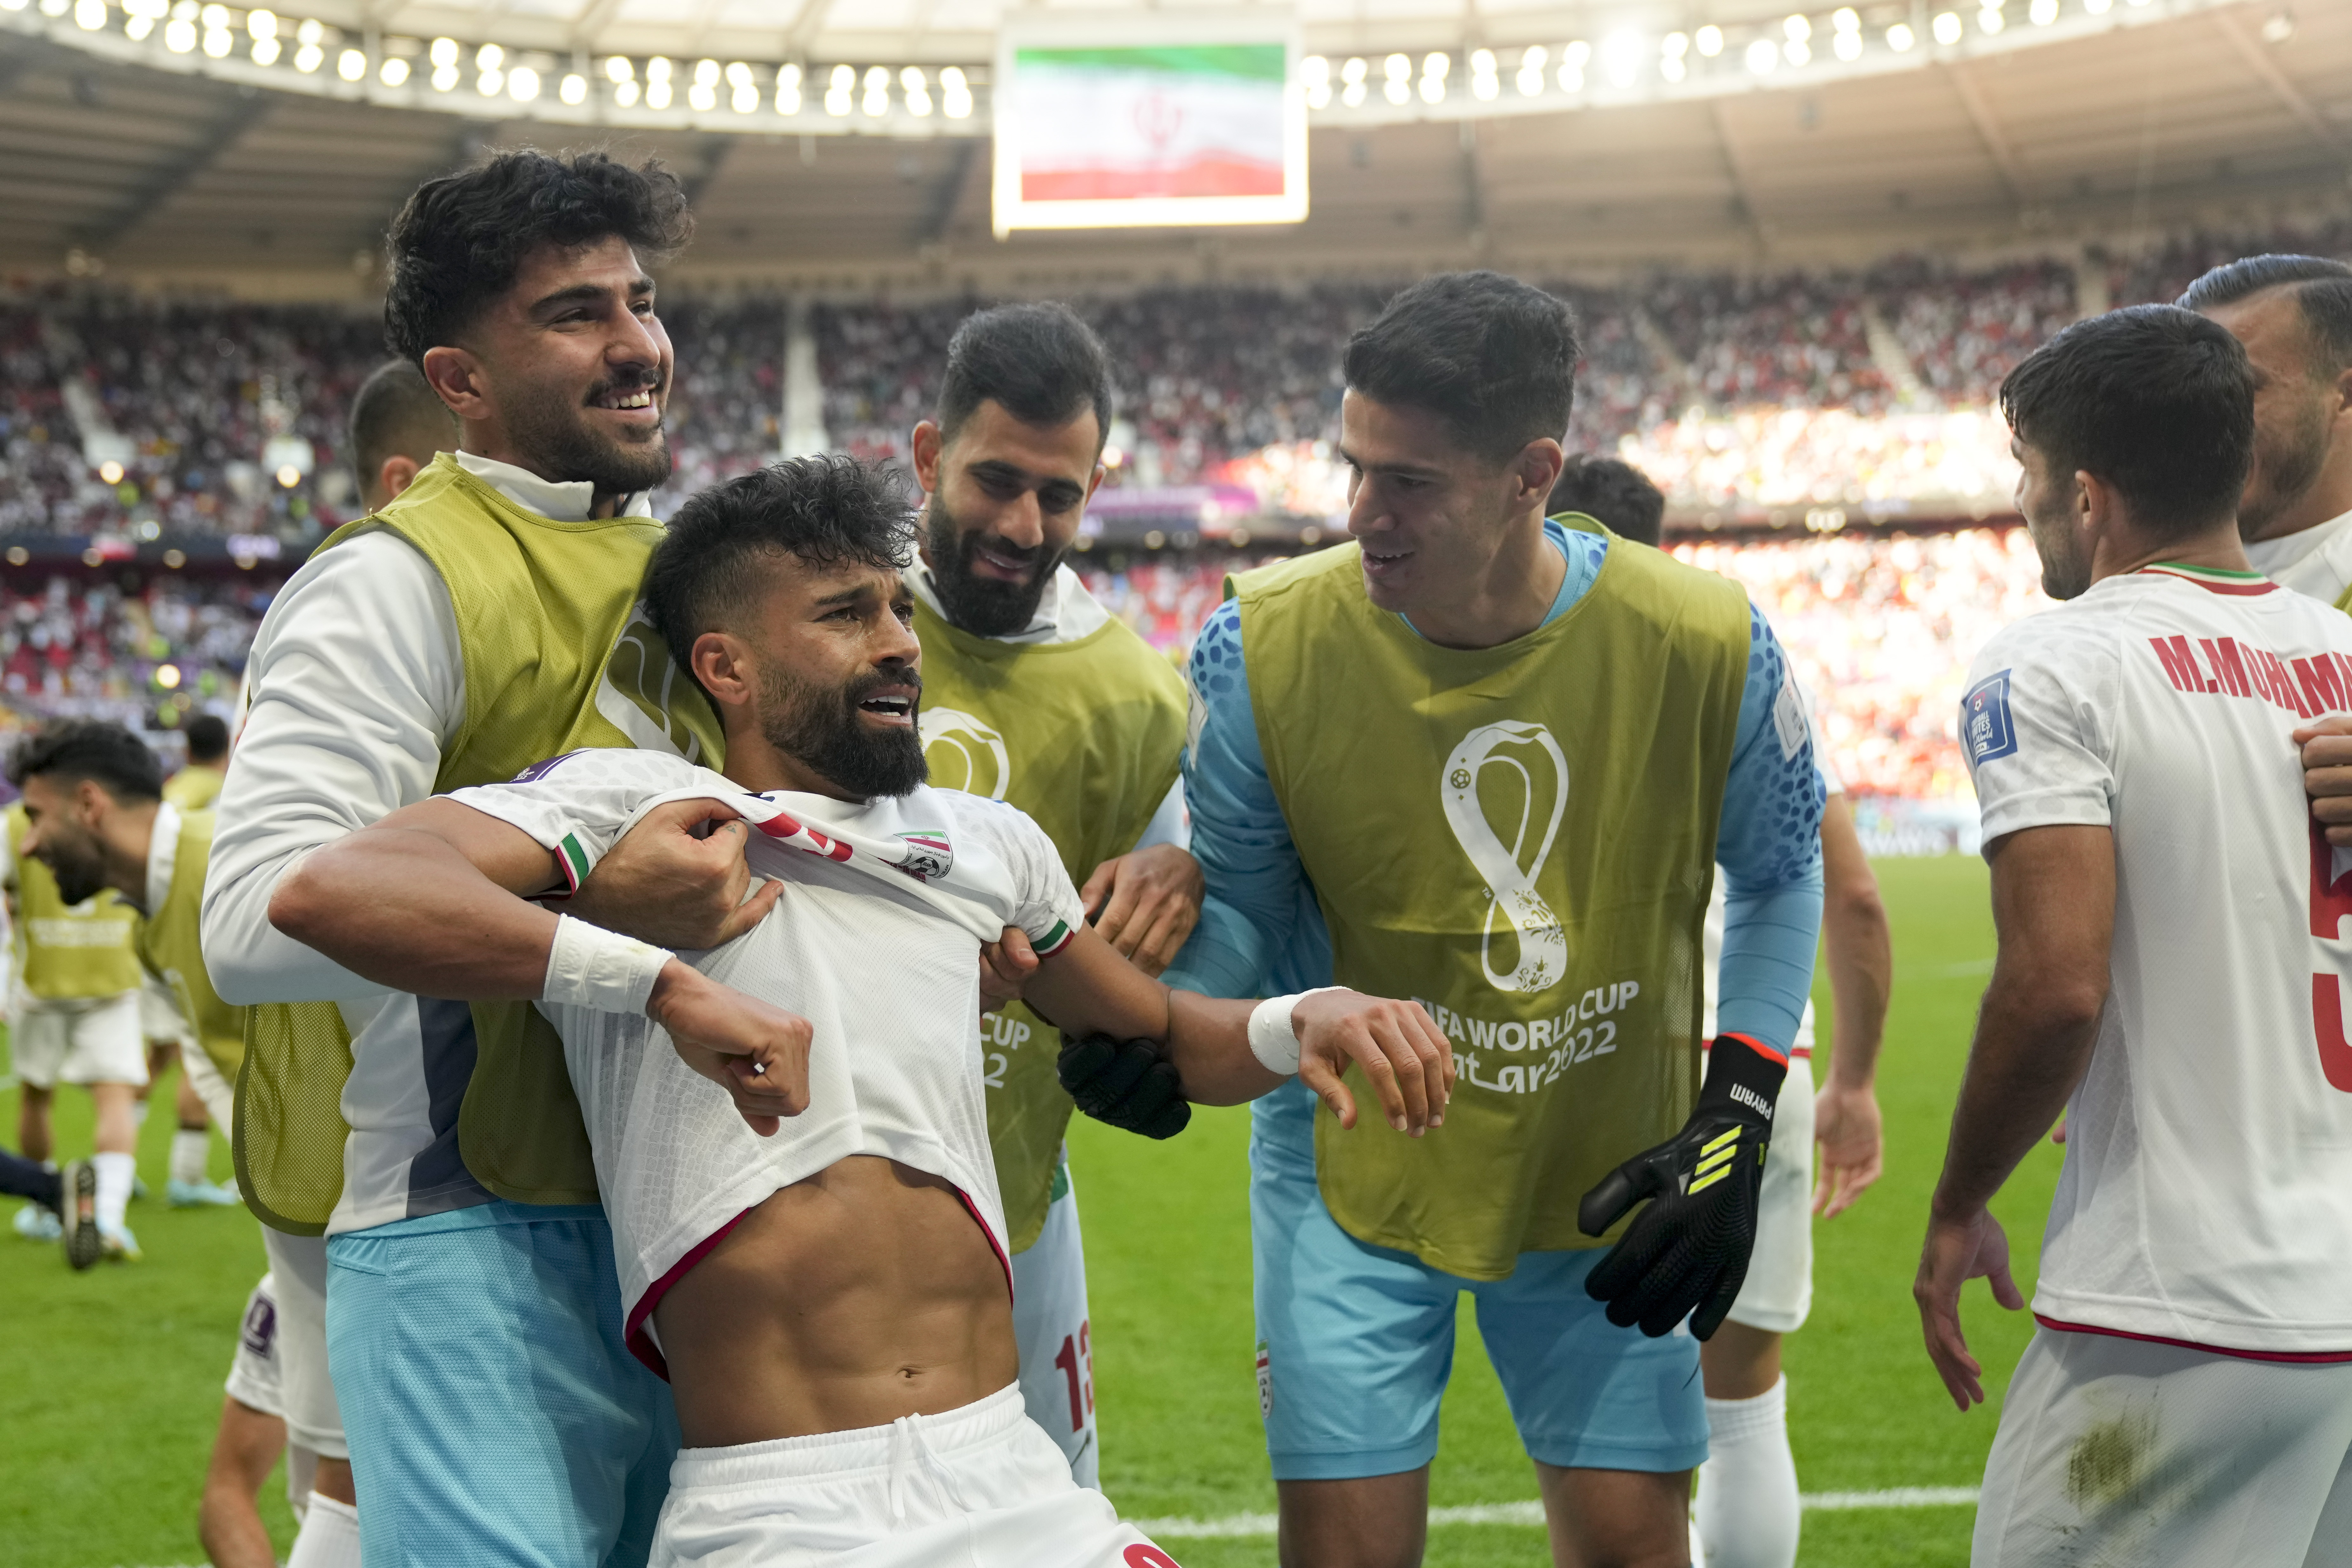 El fútbol de Irán fastidia la fiesta de Bale